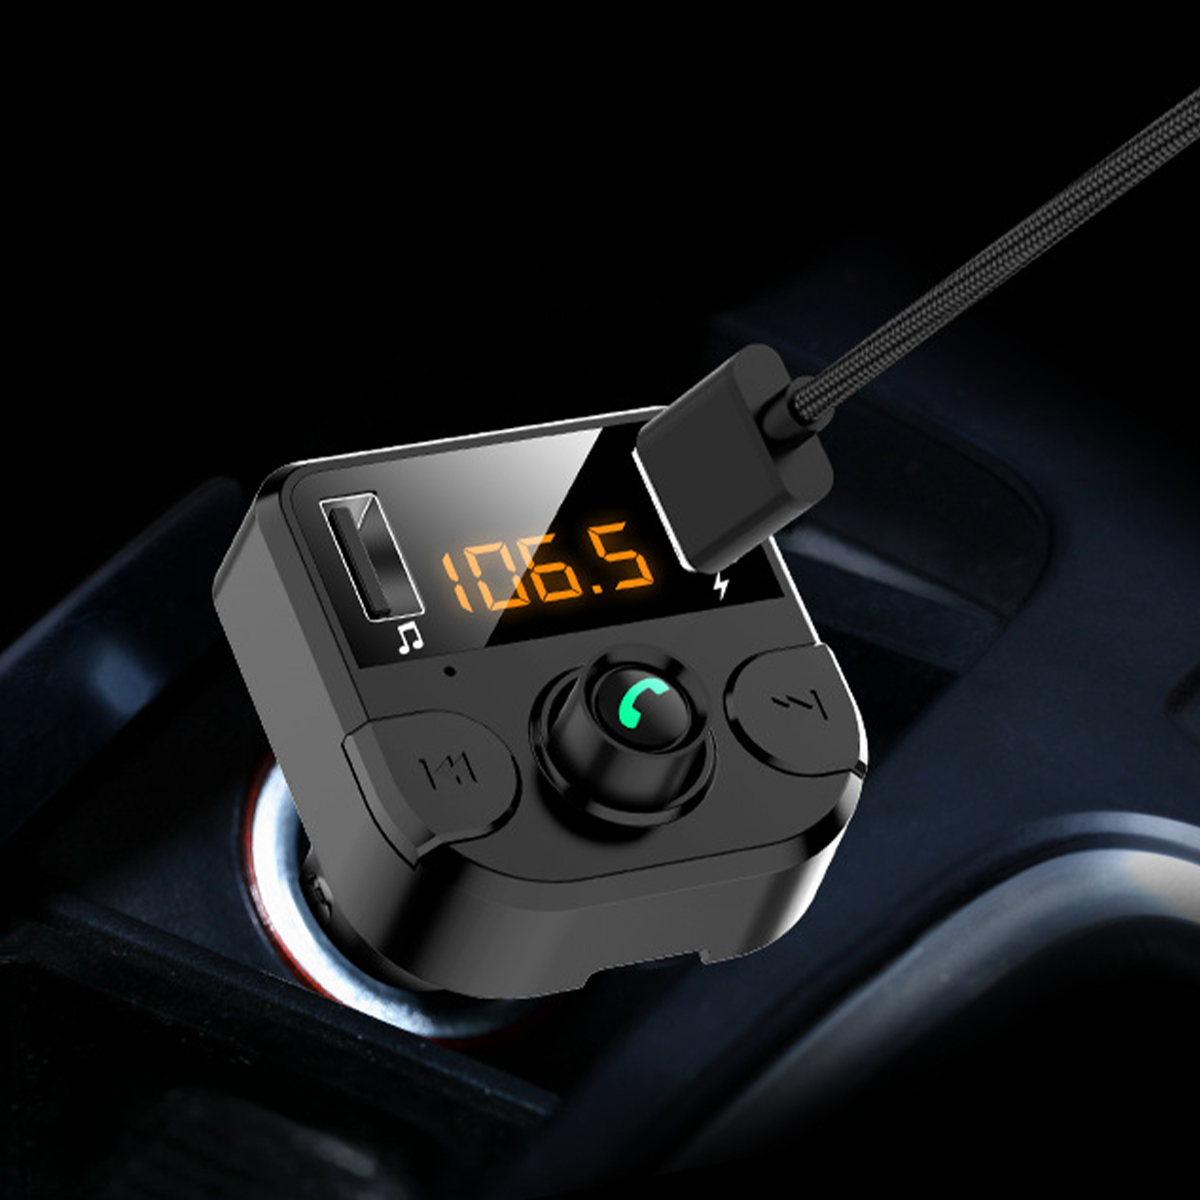 รายละเอียดเพิ่มเติมเกี่ยวกับ Dual USB Car Charger เครื่องเล่น MP3 FM Transmitter บลูทูธติดรถยนต์ เครื่องเล่นเพลง ชาร์จแบตมือถือในรถยนต์ บลูทูธติดรถยนต์ เชื่อมต่อมือถือกับรถยนต์#A-039